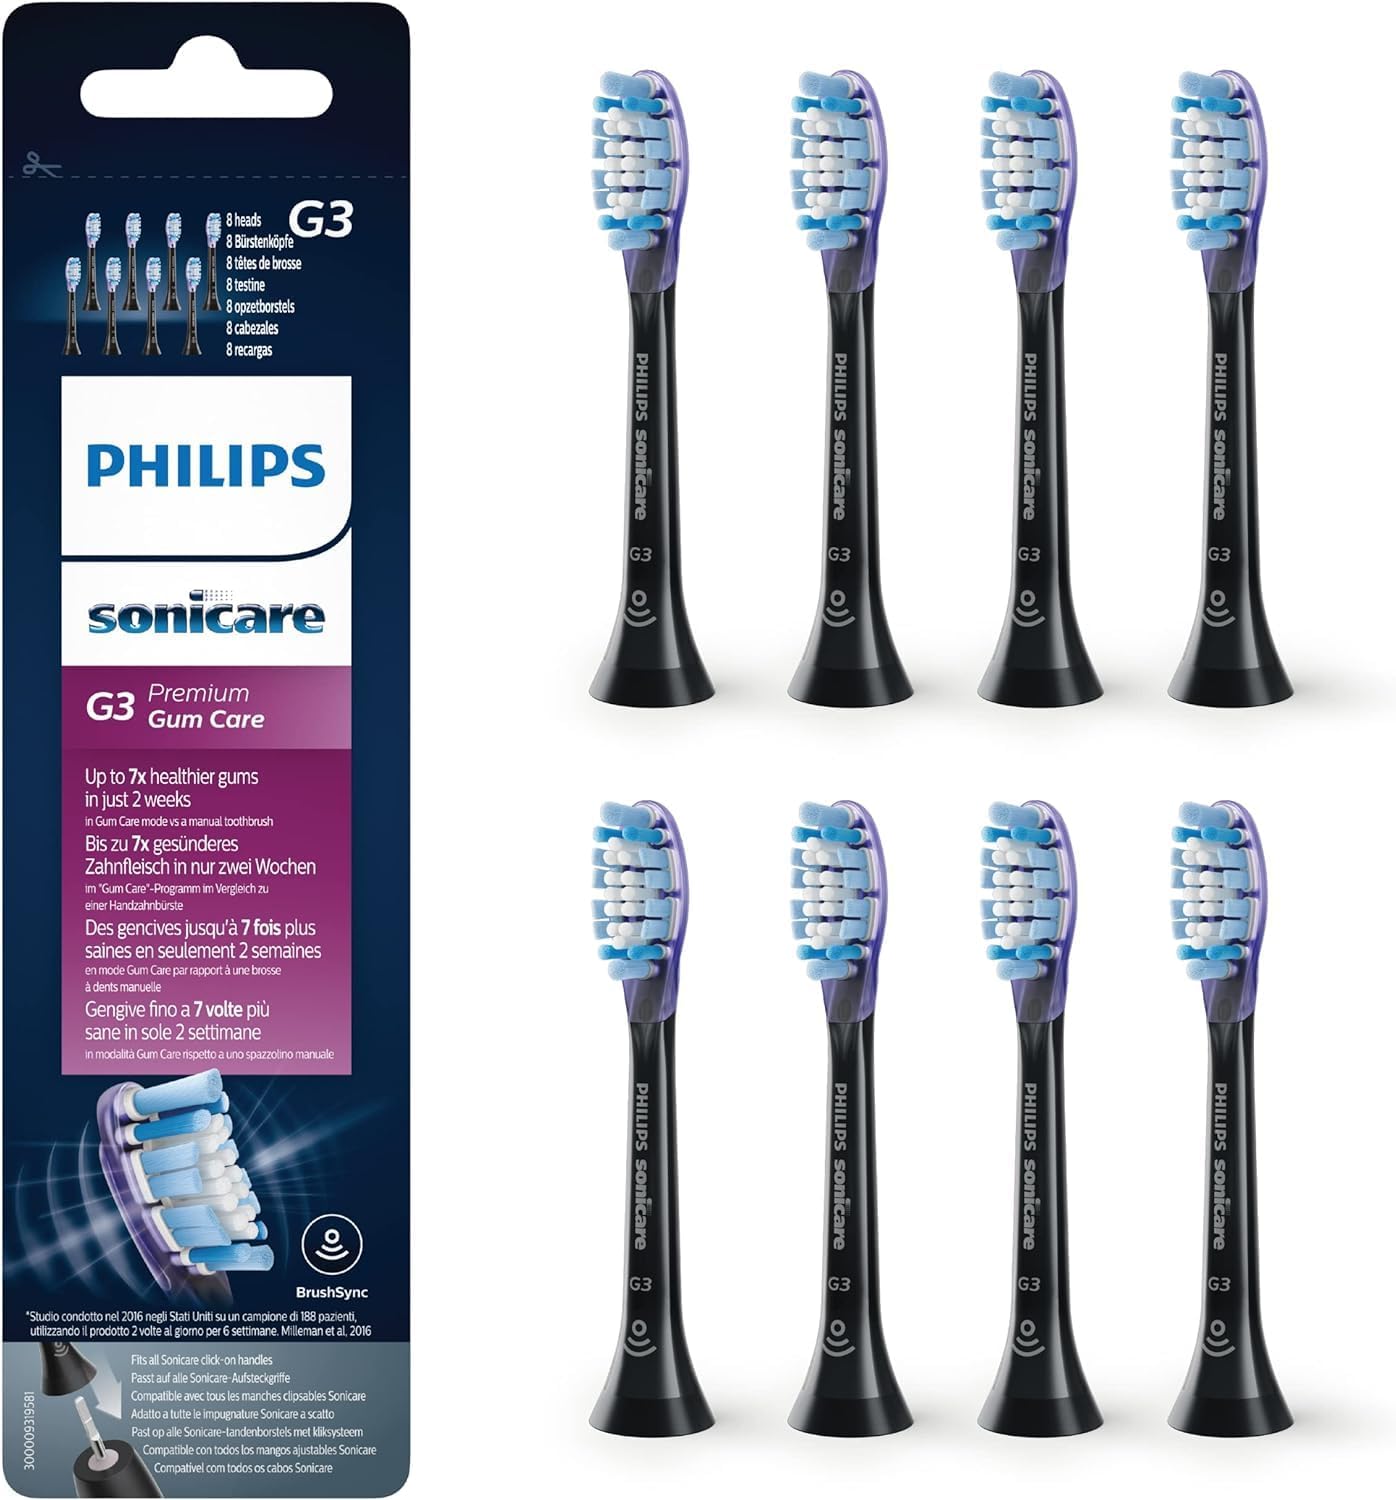 Für empfindliche Zähne – 8x Philips Sonicare Original G3 Premium Gum Care Zahnbürstenköpfe bei Amazon